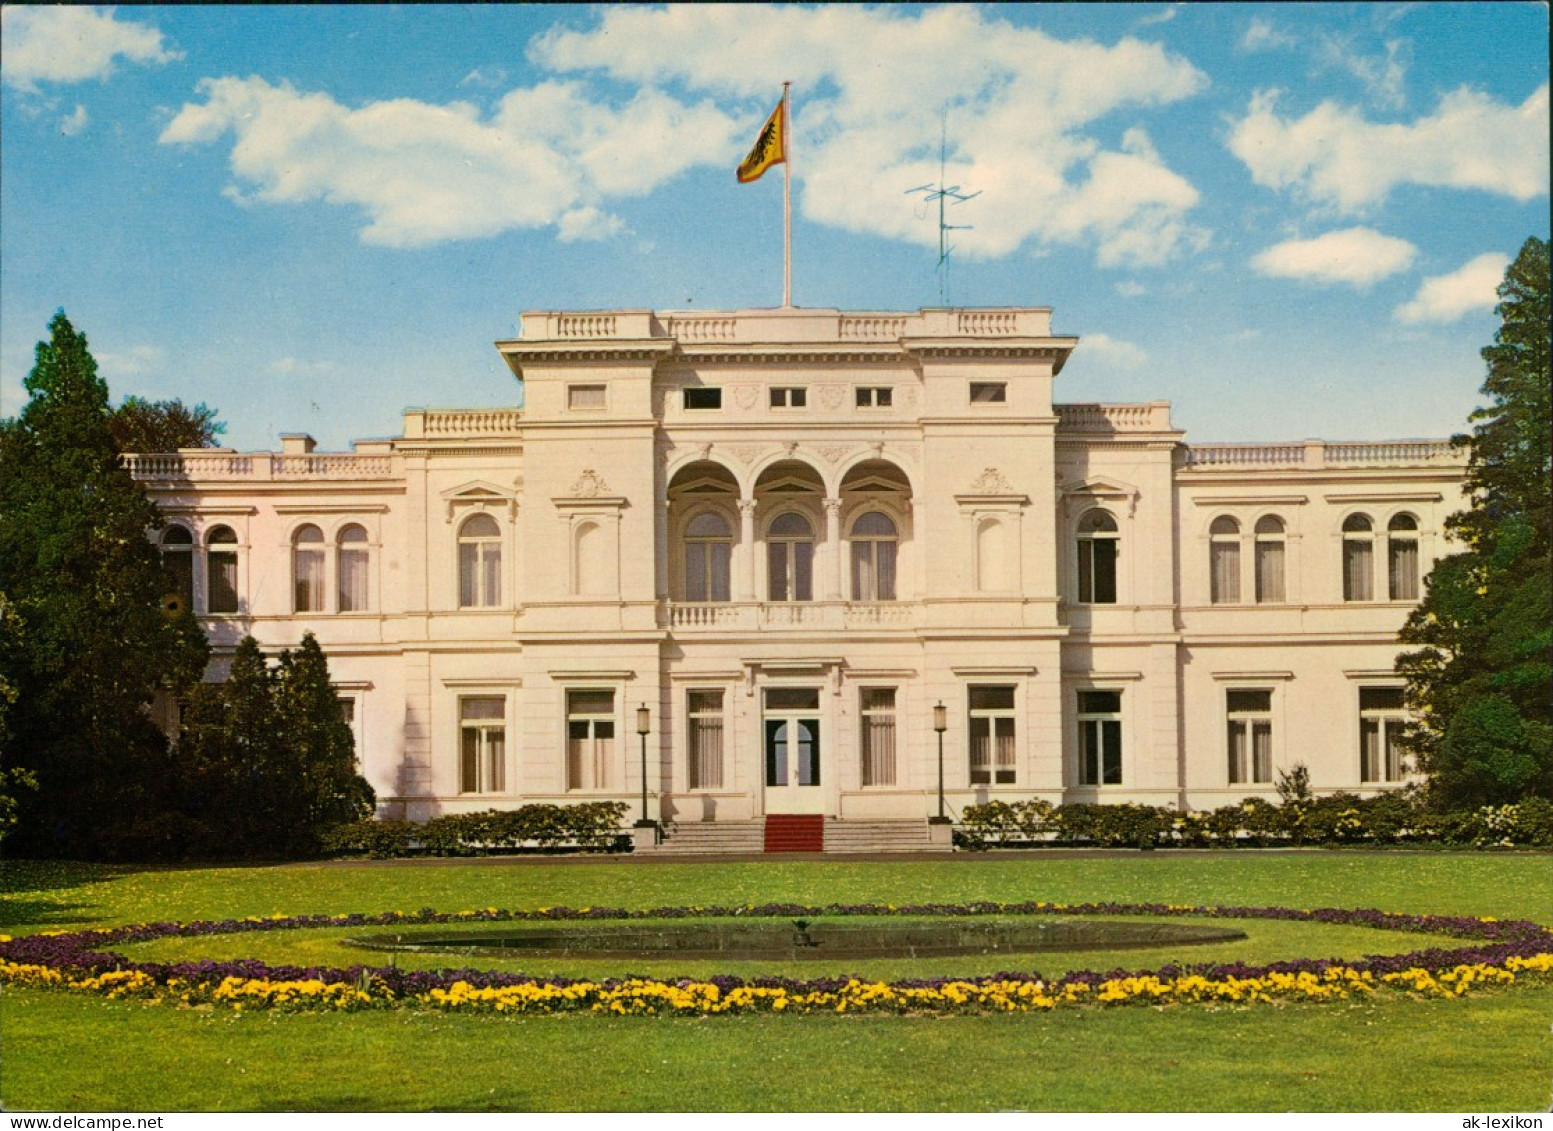 Ansichtskarte Bonn Villa Hammerschmidt Sitz Des Bundespräsidenten 1965 - Bonn